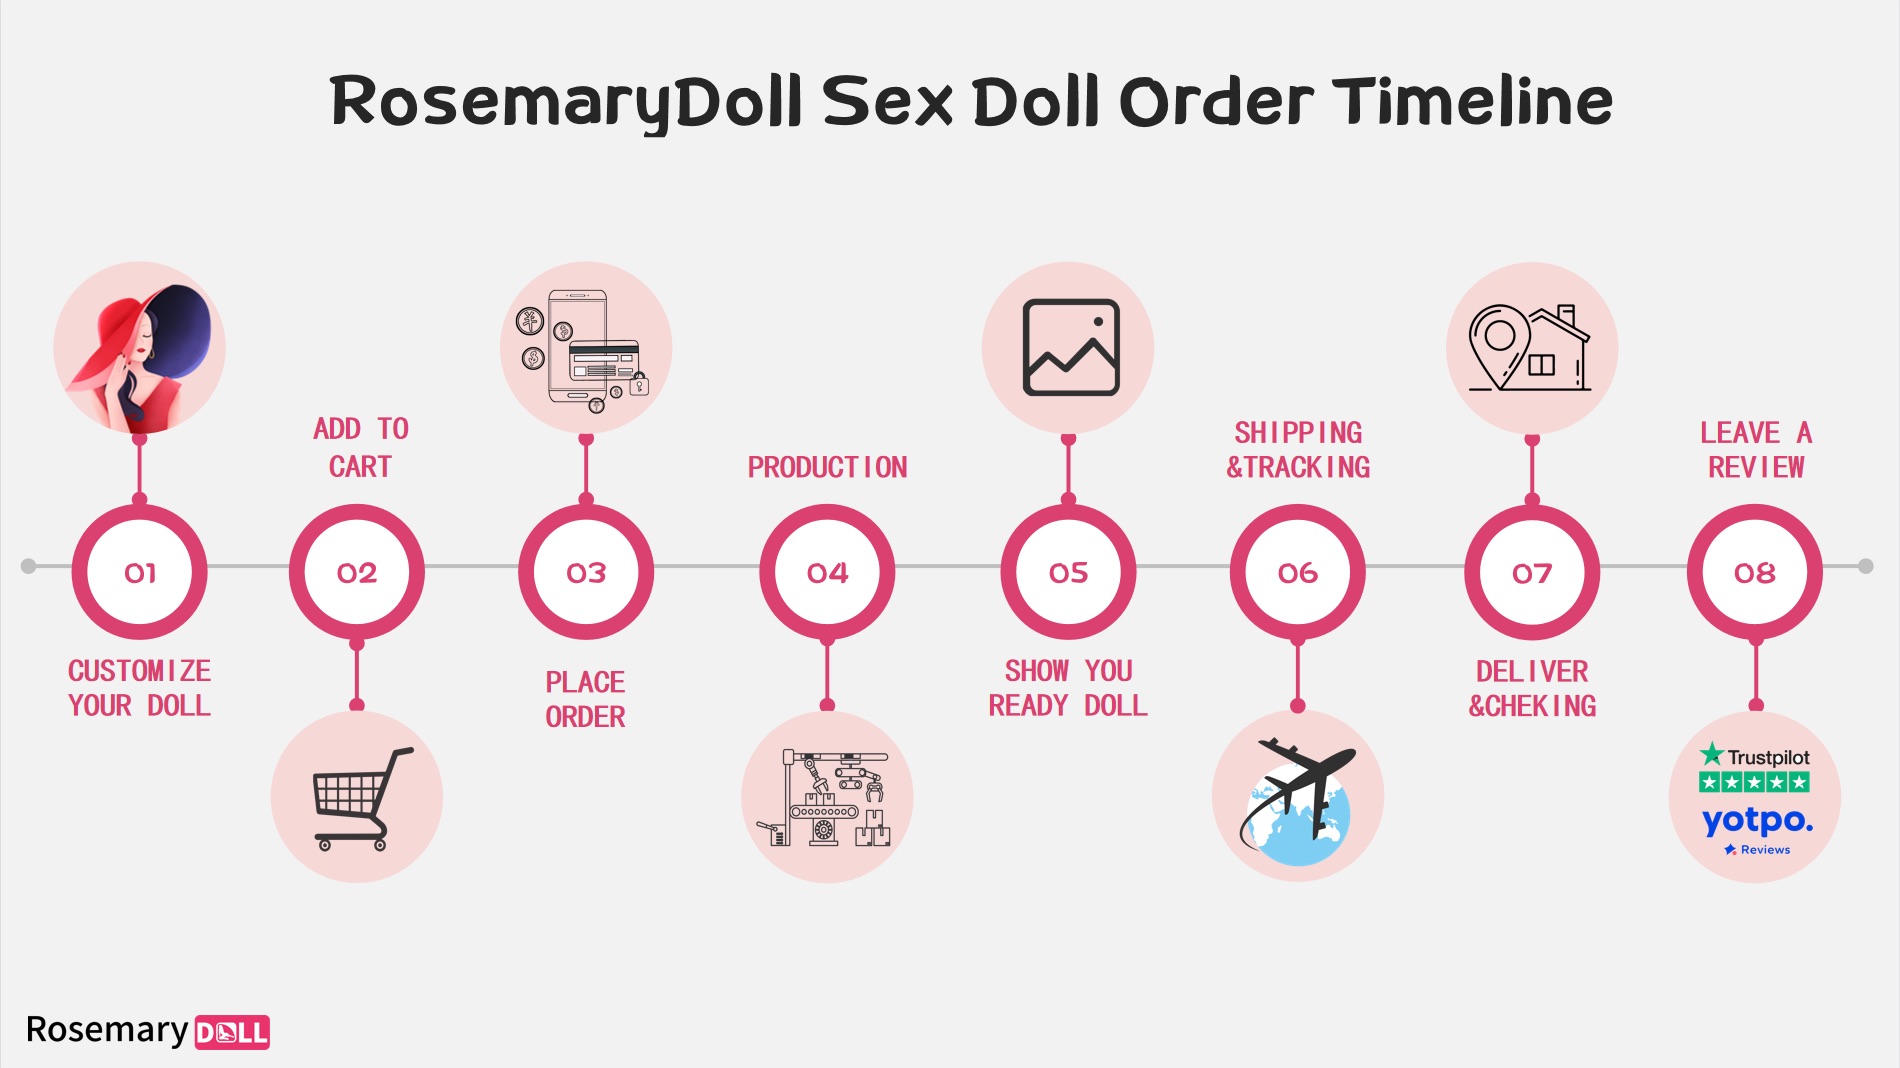 Cronología de pedidos de muñecas sexuales RosemaryDoll